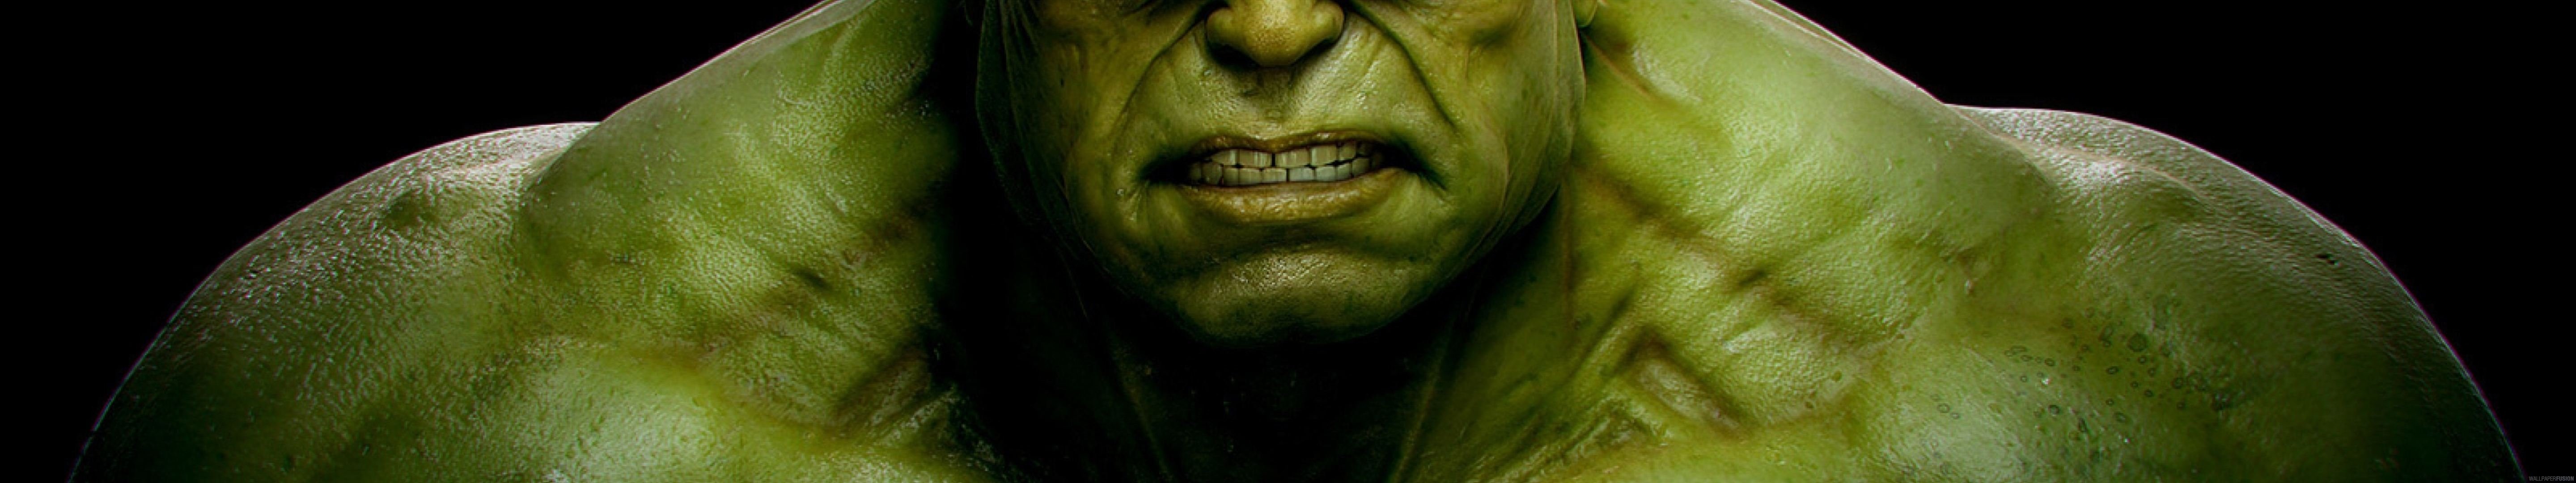 Screen Multi Monitor Multiple Marvel Hulk Wallpaper Background